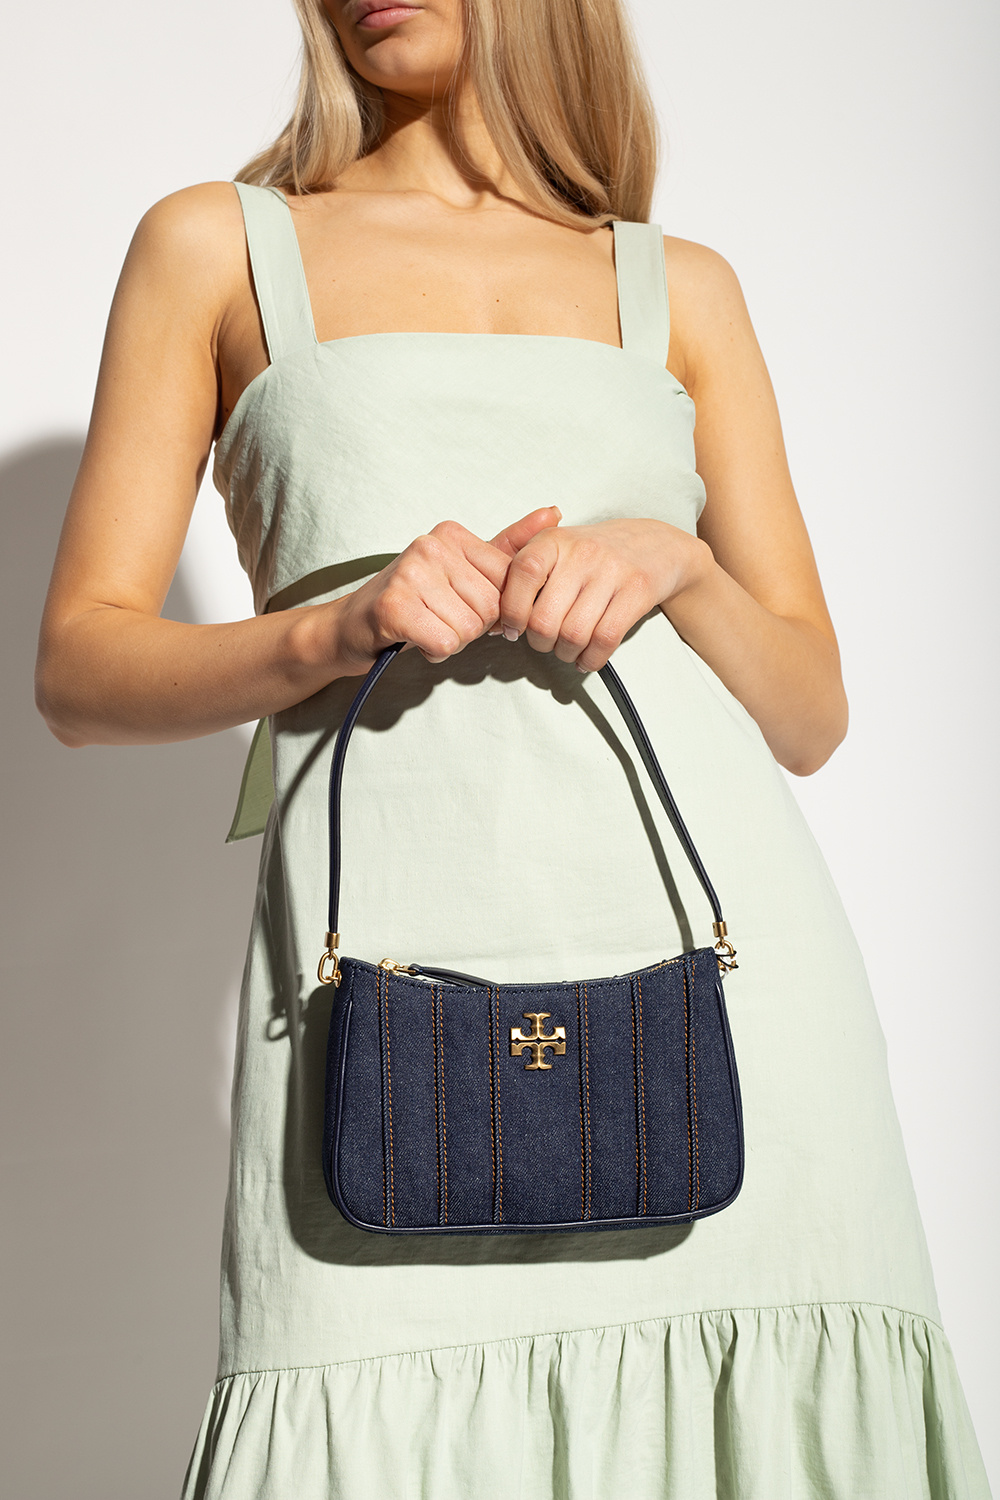 Kira Denim Mini Camera Bag: Women's Designer Crossbody Bags